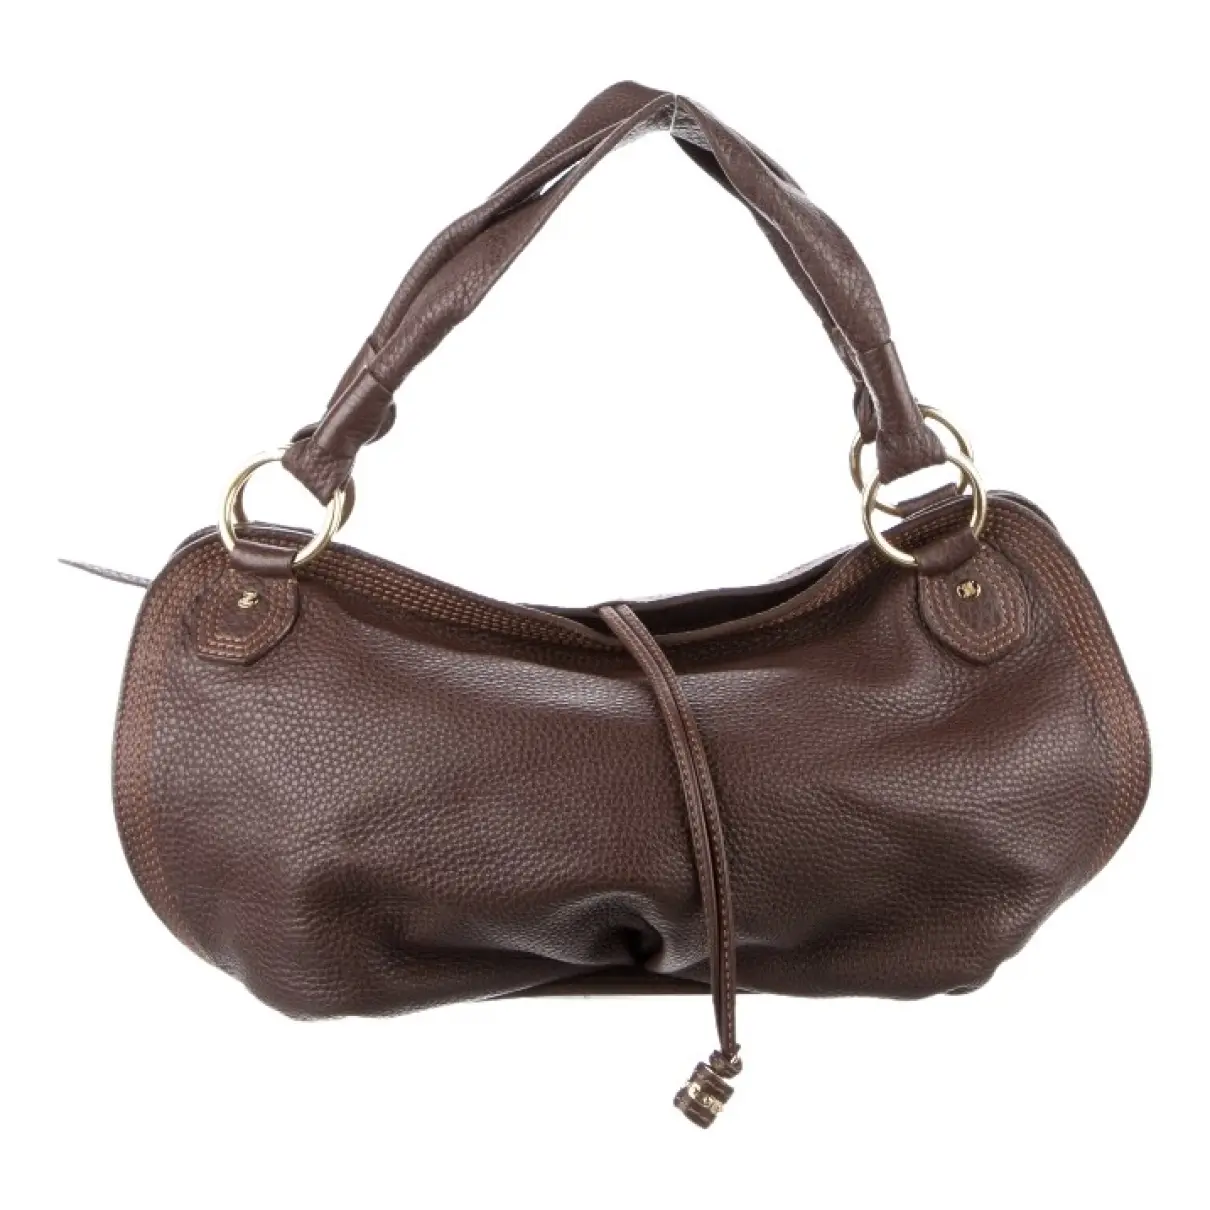 Hobo leather handbag Celine